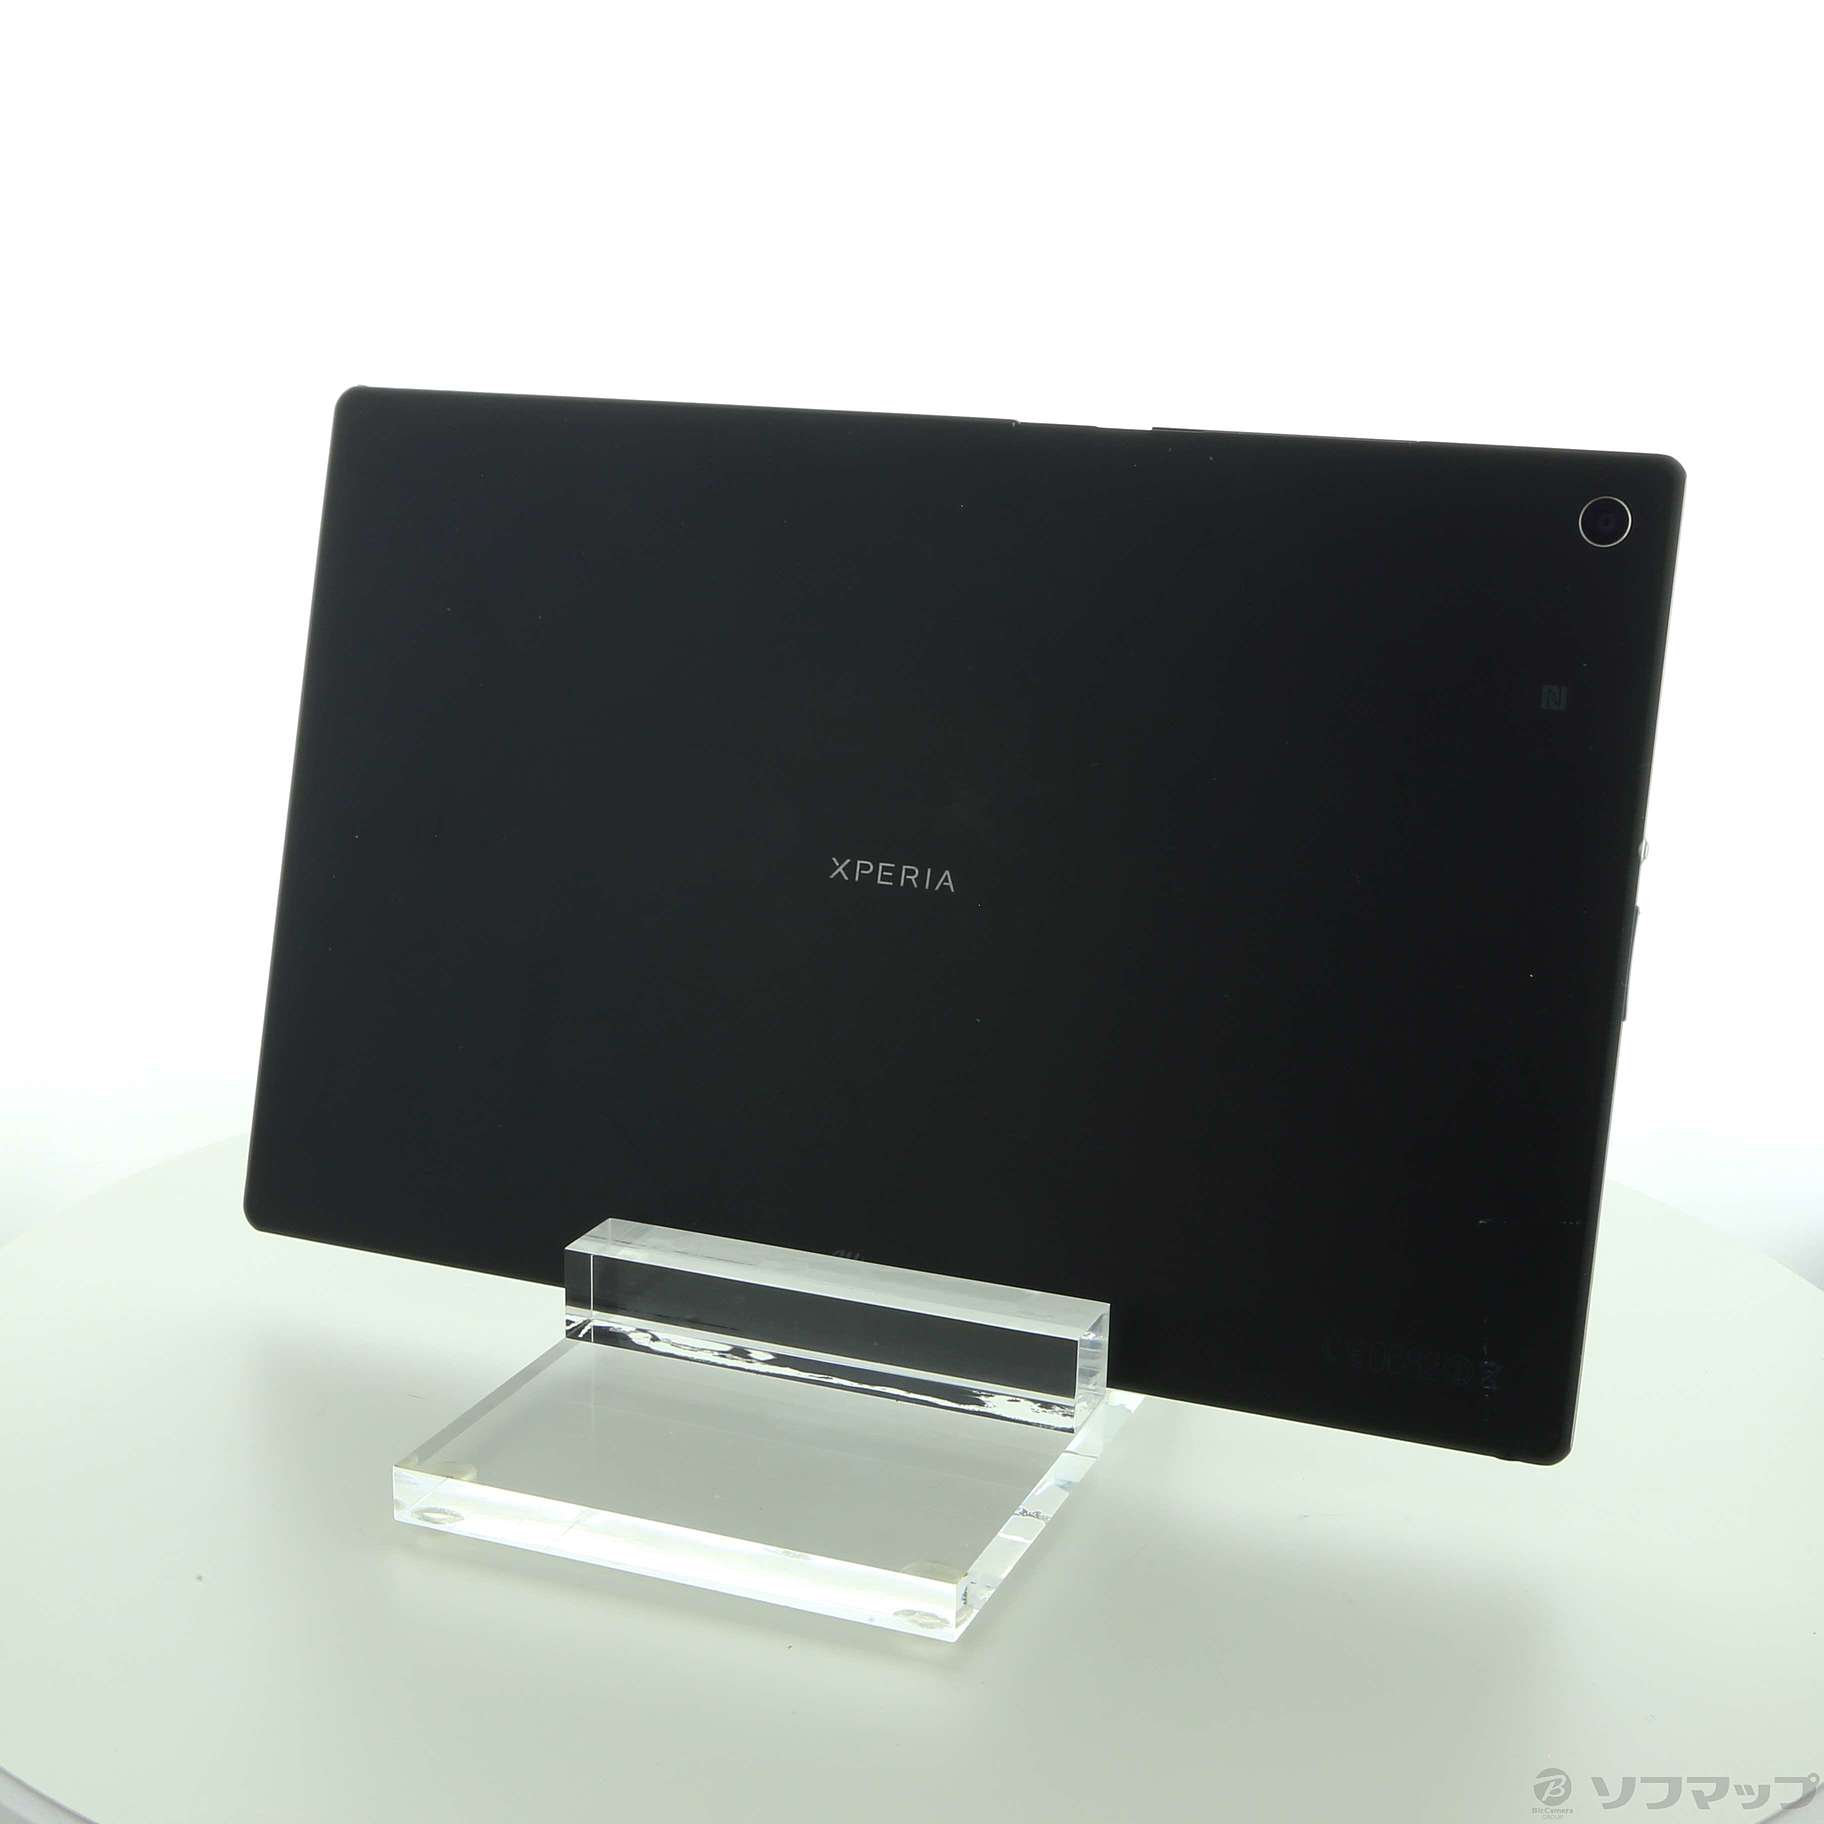 『訳あり特価』Xperia Z2 tablet SOT21 au未使用の状態Aランク品